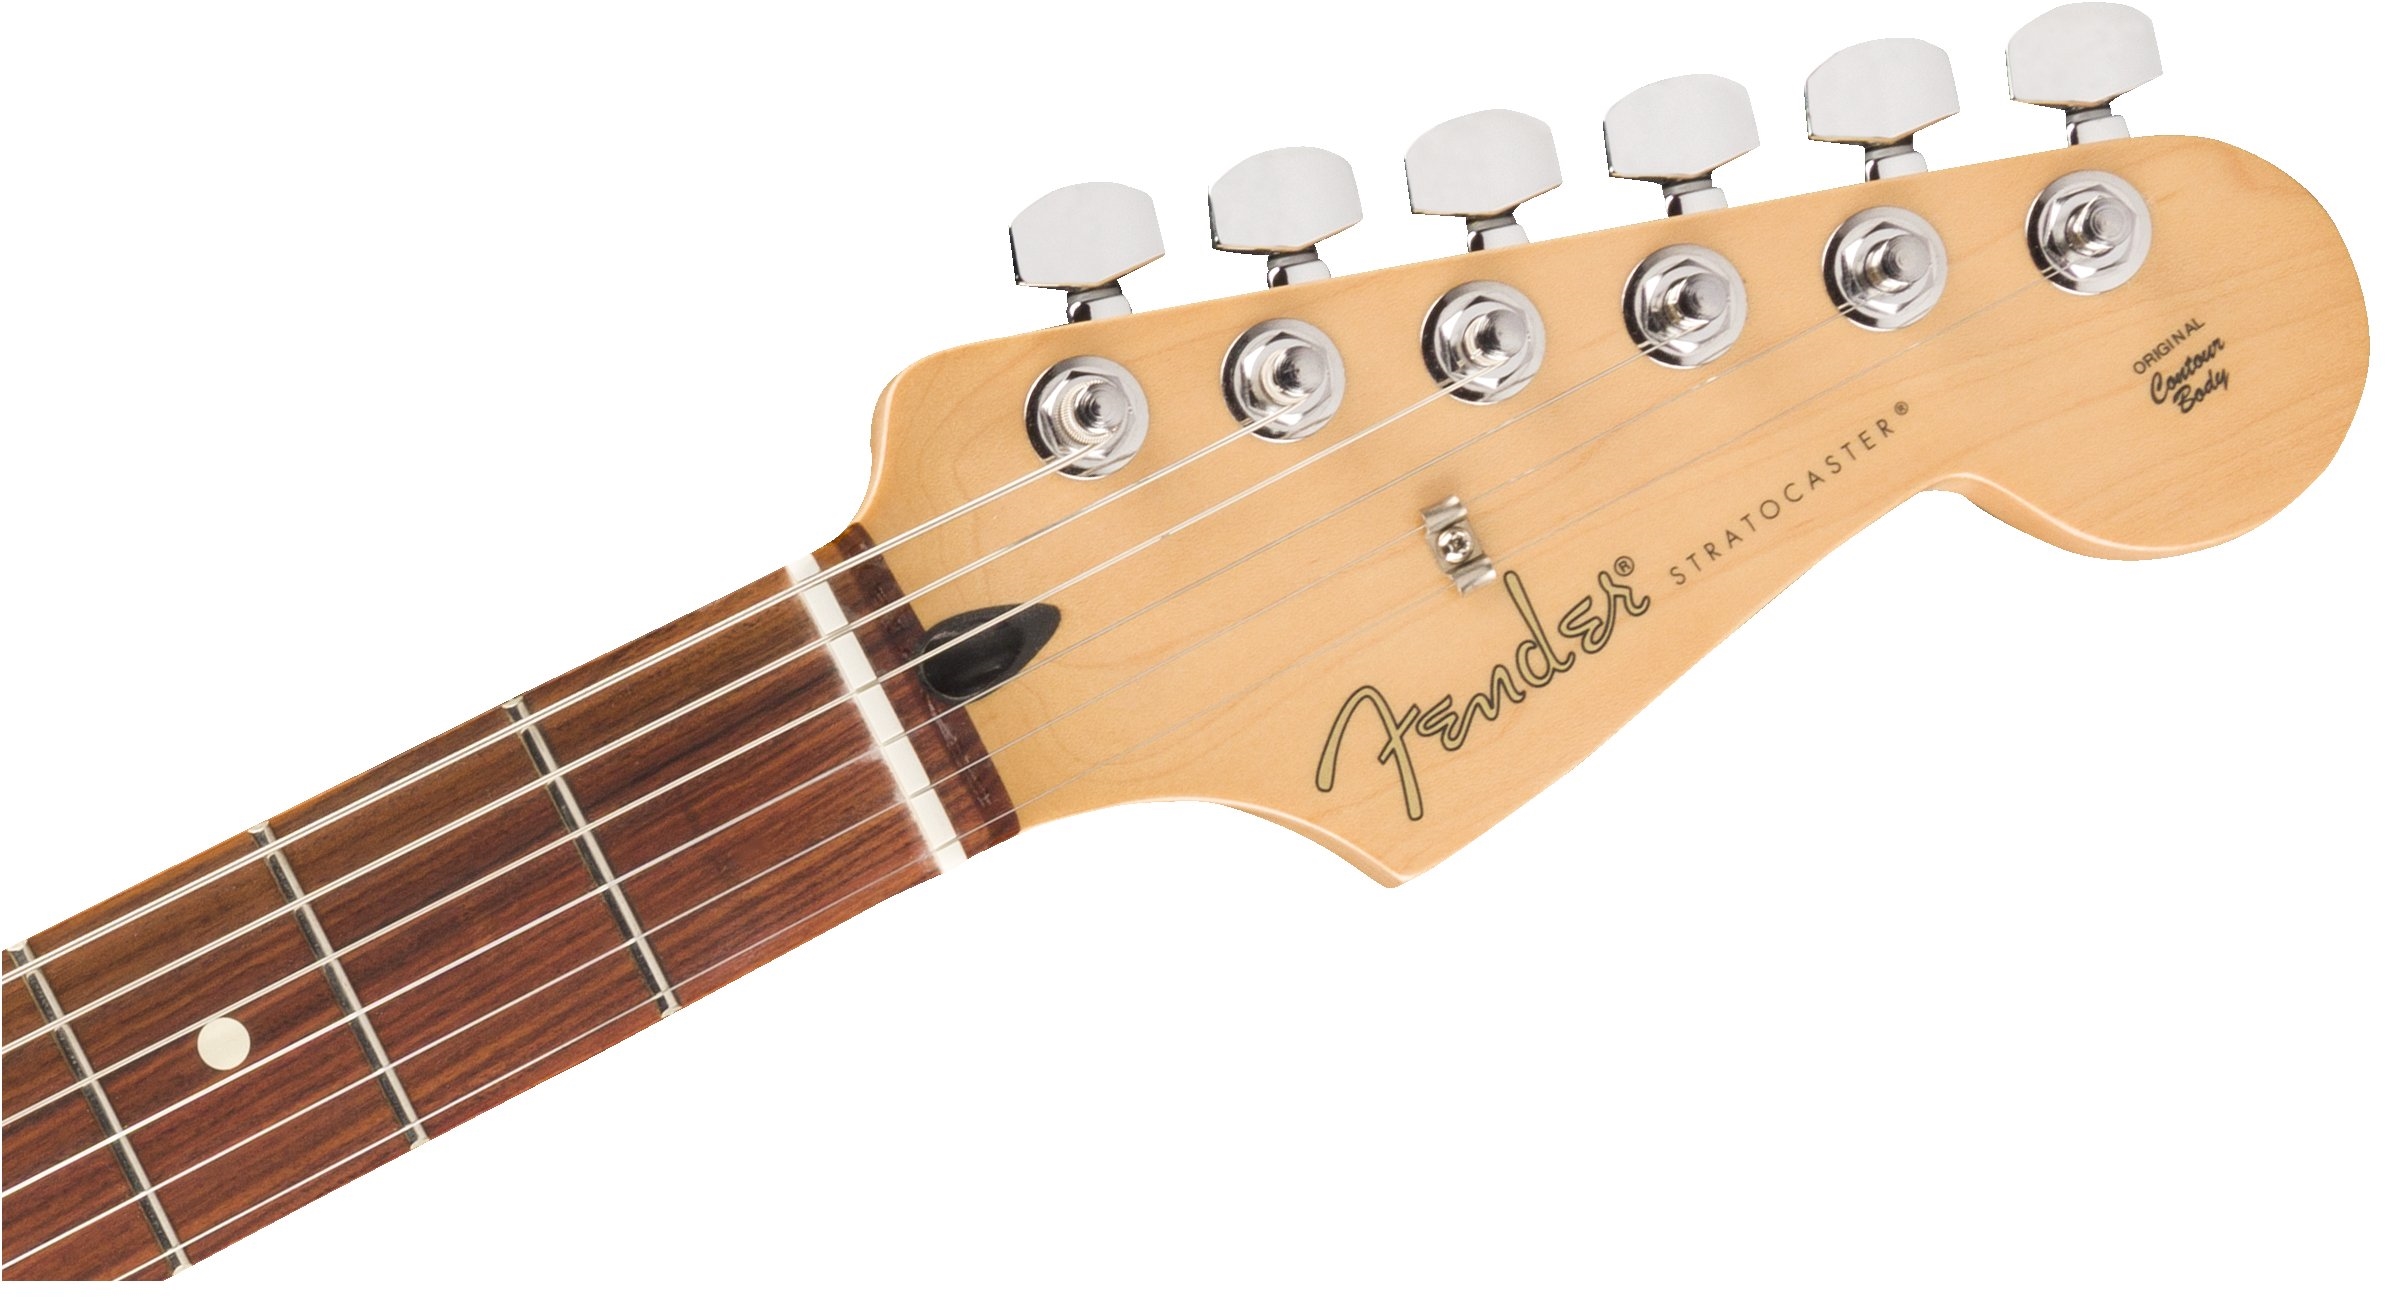 Fender Strat Player Ltd Mex 3s Trem Pf - Fiesta Red - Guitare Électrique Forme Str - Variation 4